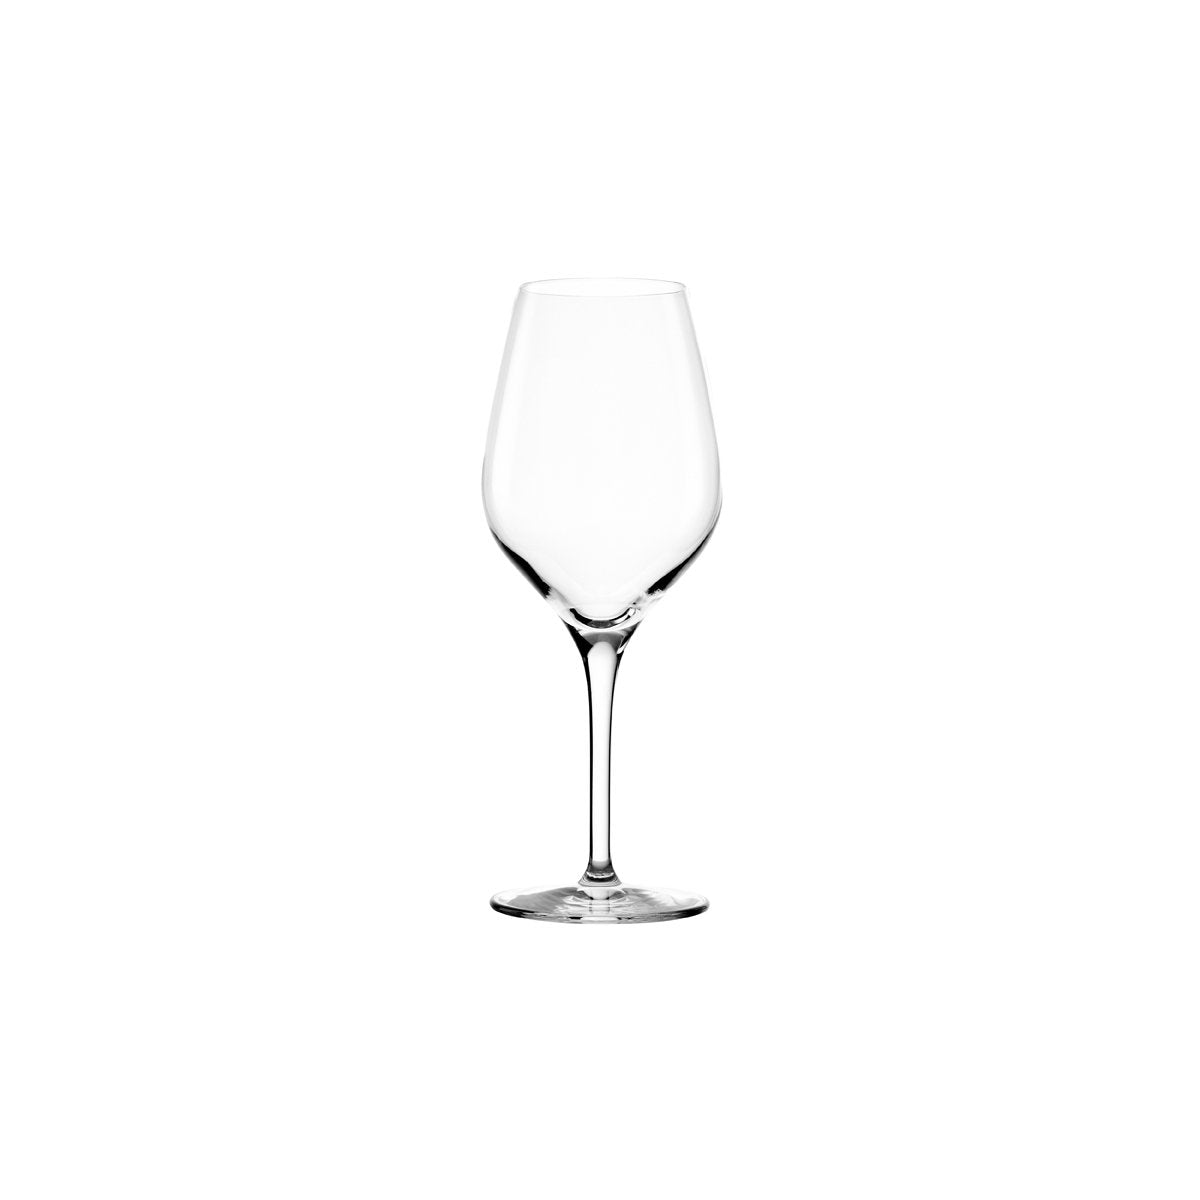 360-804 Stolzle Exquisit White Wine 350ml Tomkin Australia Hospitality Supplies